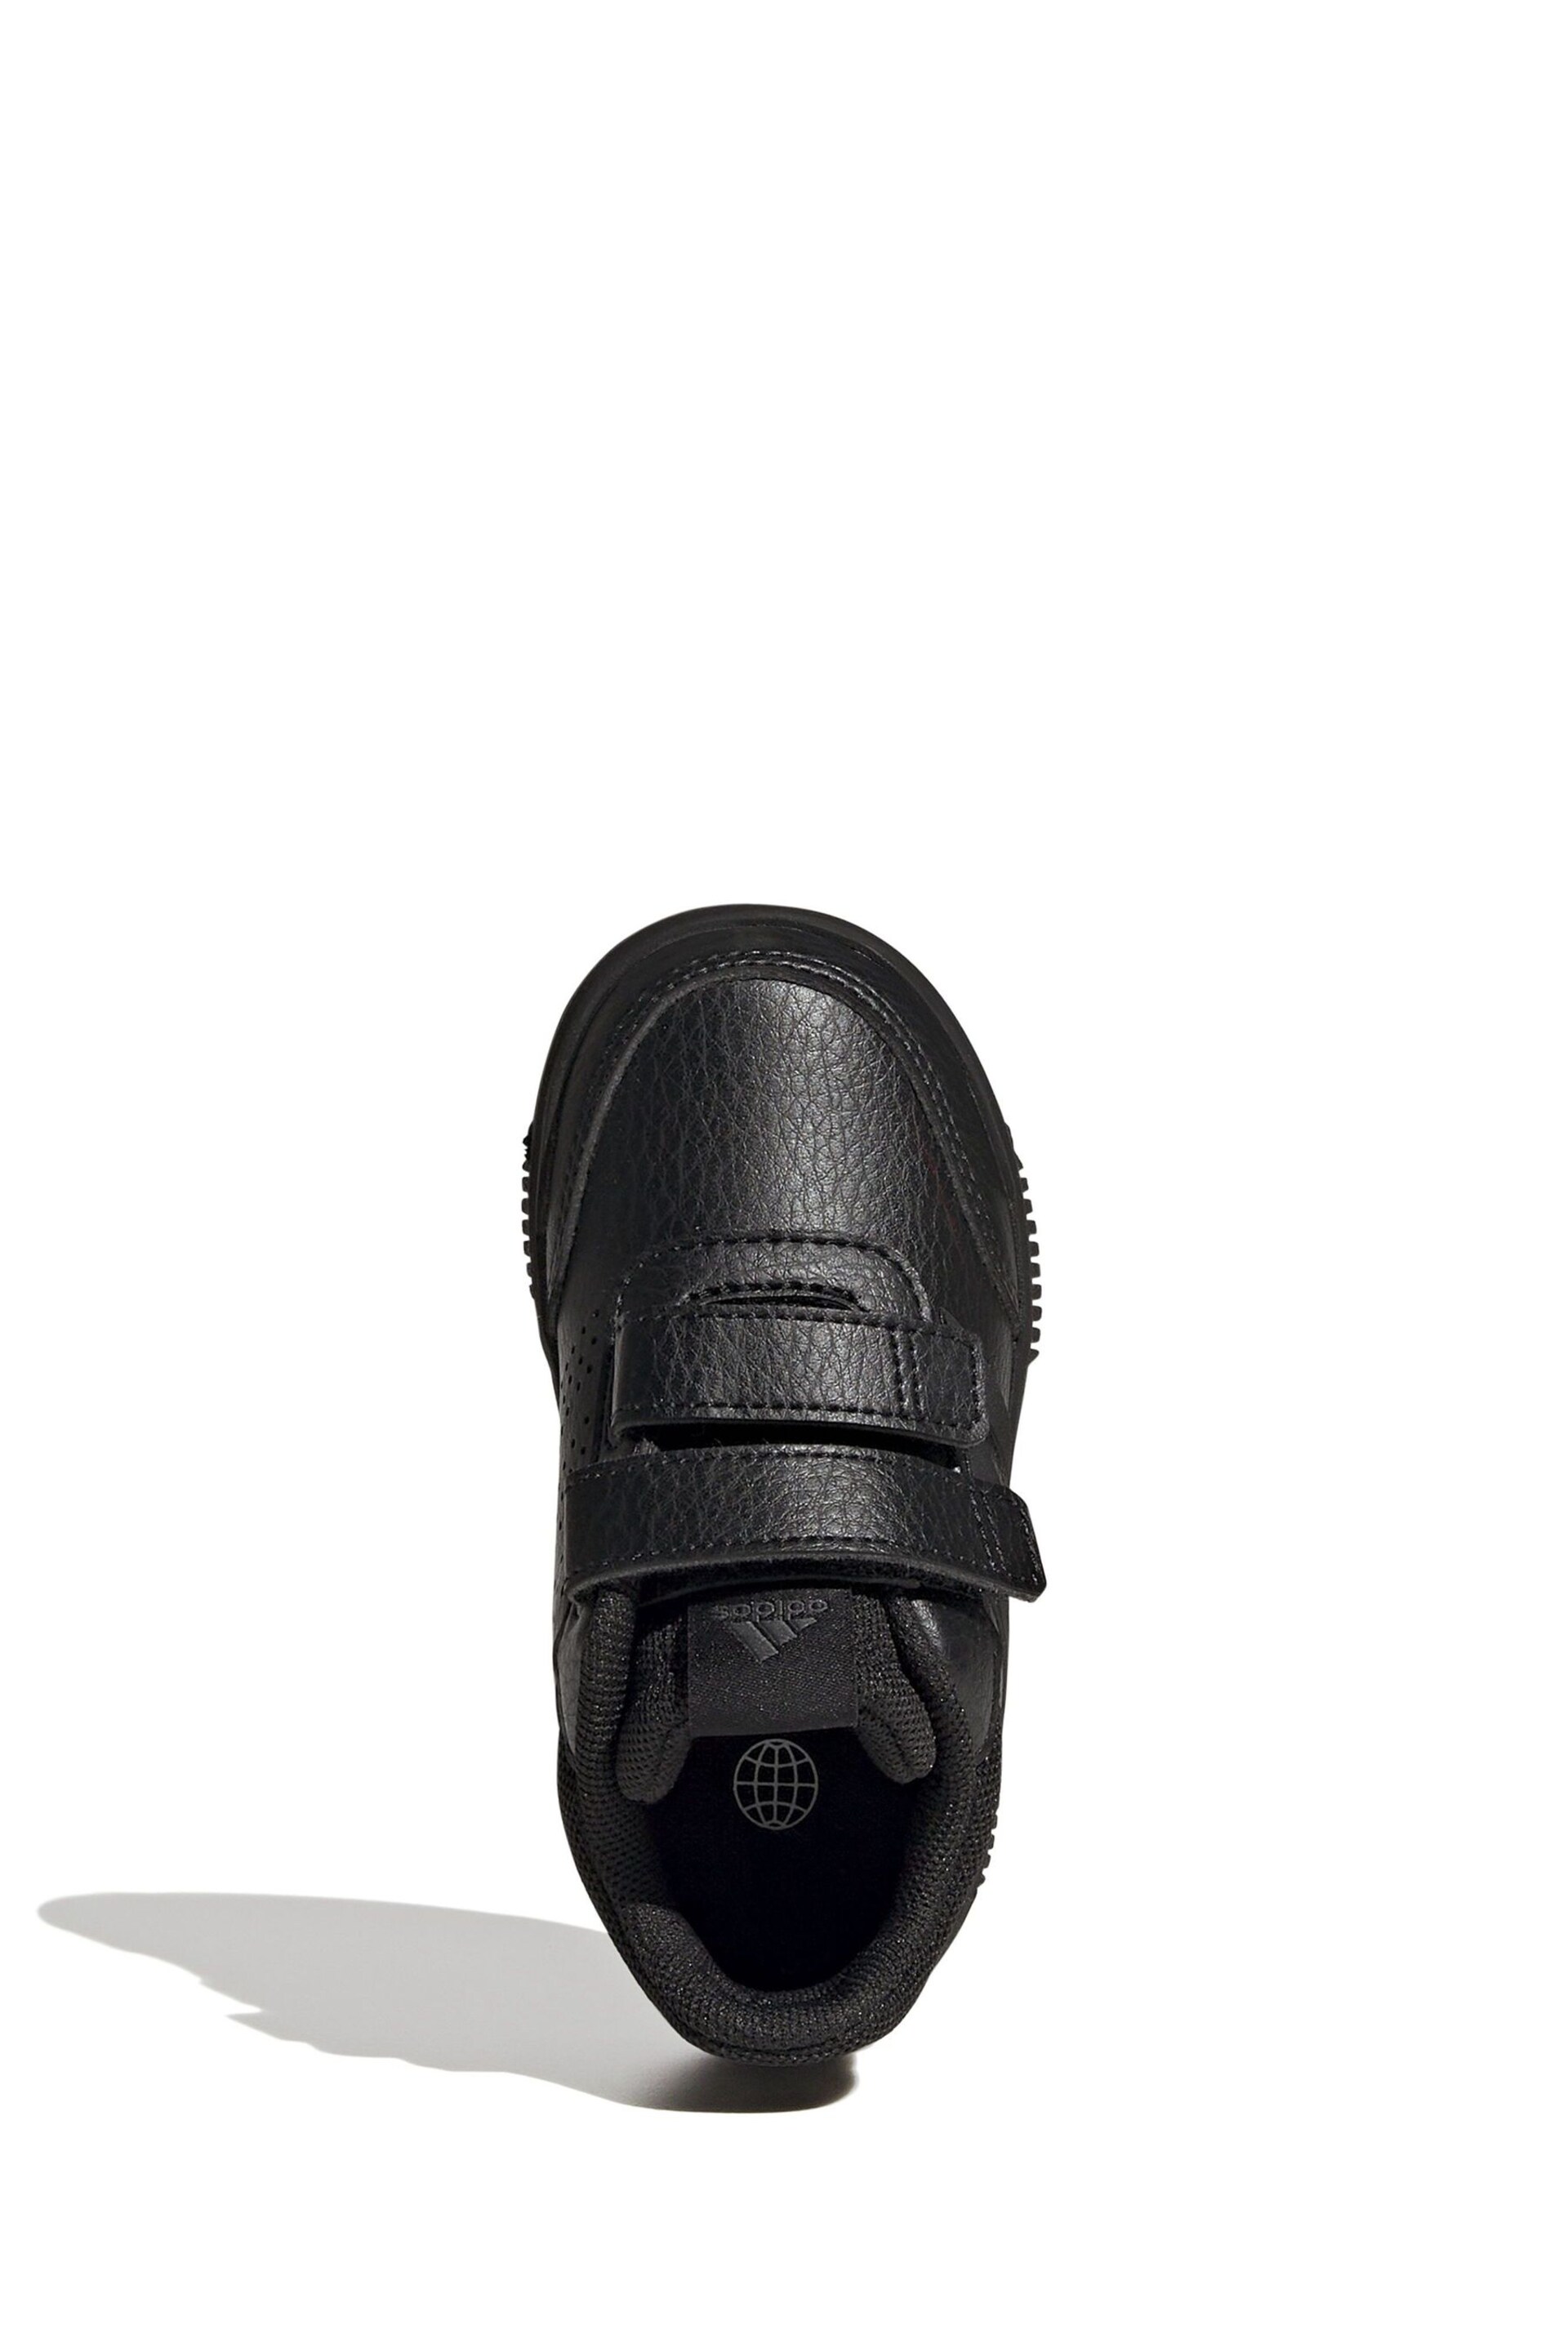 adidas Black Tensaur Hook and Loop Shoes - Image 6 of 8